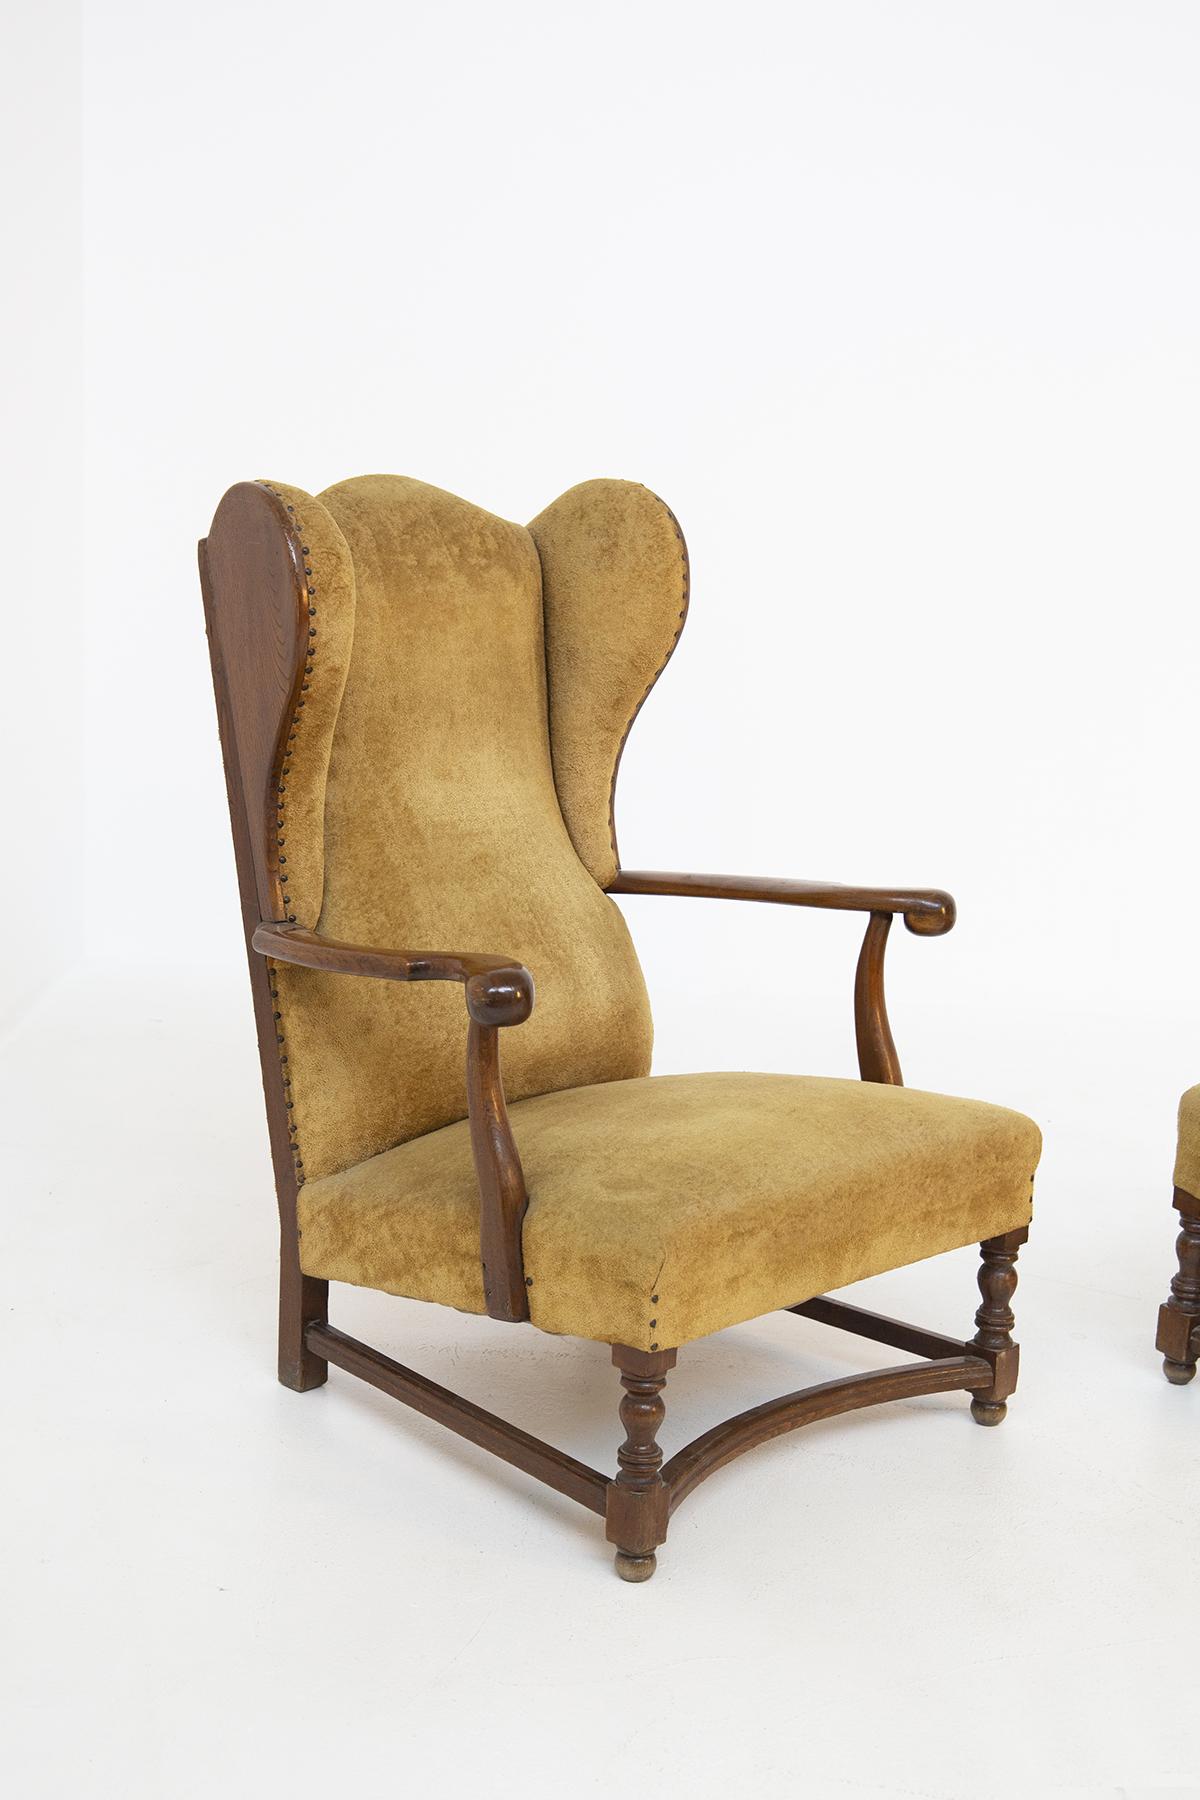 Wunderschönes Paar Samt-Sessel aus englischer Produktion aus den späten 1800er Jahren.
Die schönen Sessel haben eine Struktur aus Nussbaumholz und sind mit sandfarbenem Samt gepolstert, der ins Ockergelb tendiert.
An den hohen Seiten der